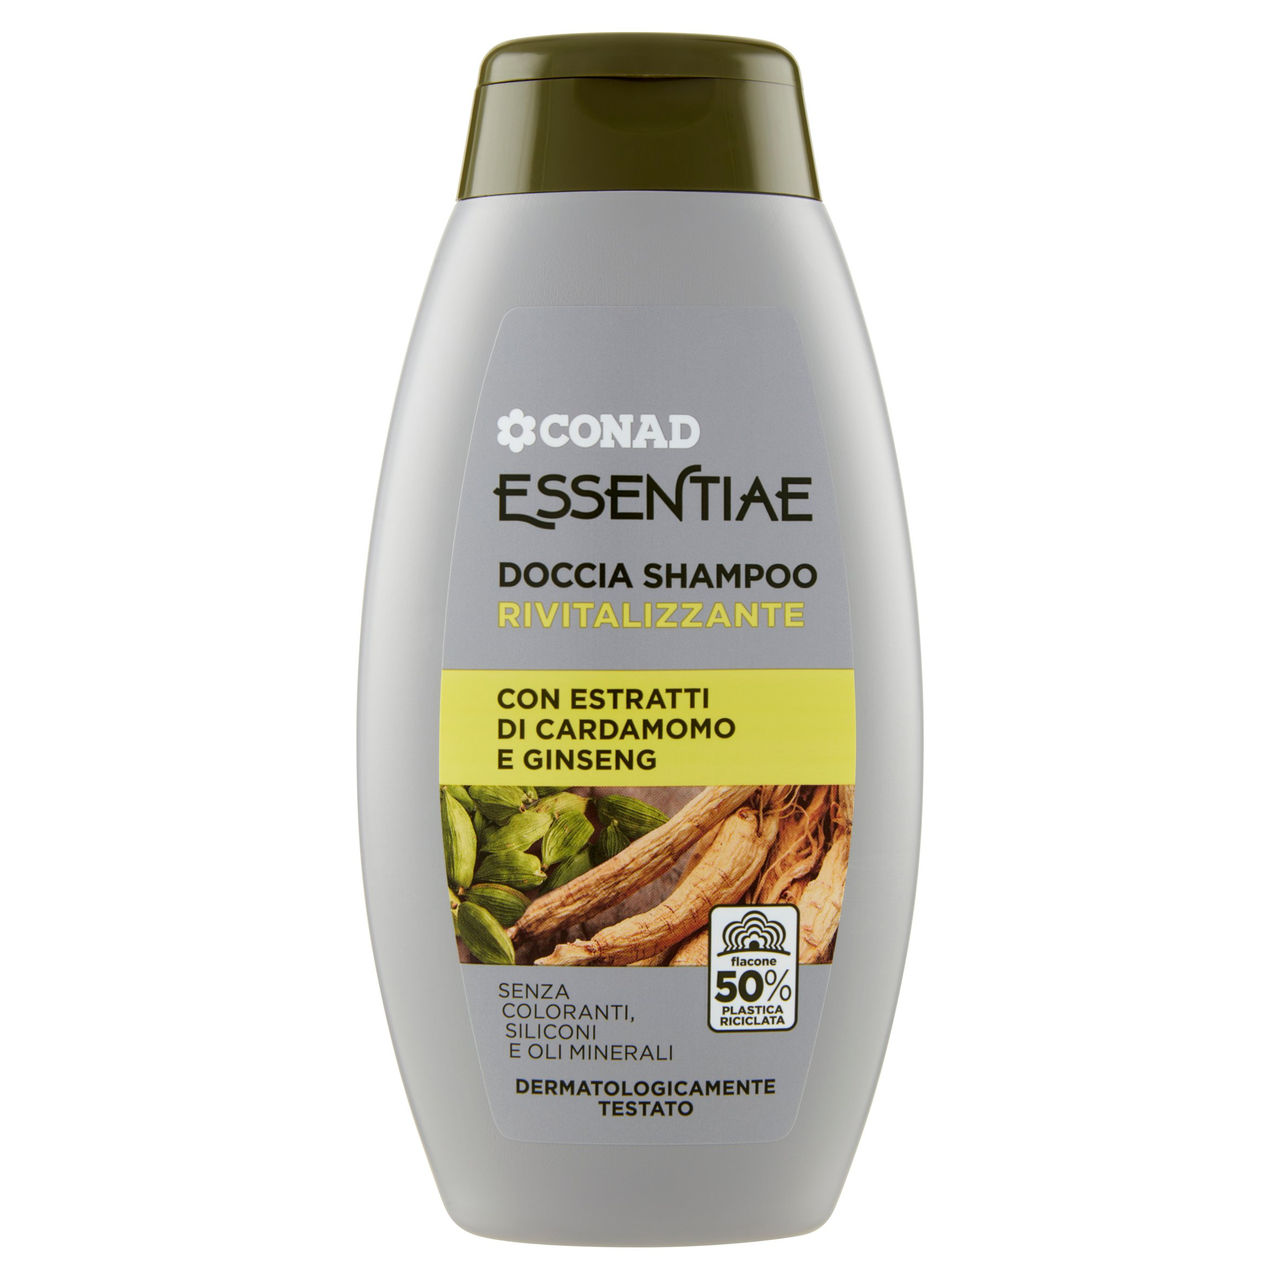 Essentiae Doccia Shampoo Rivitalizzante Conad